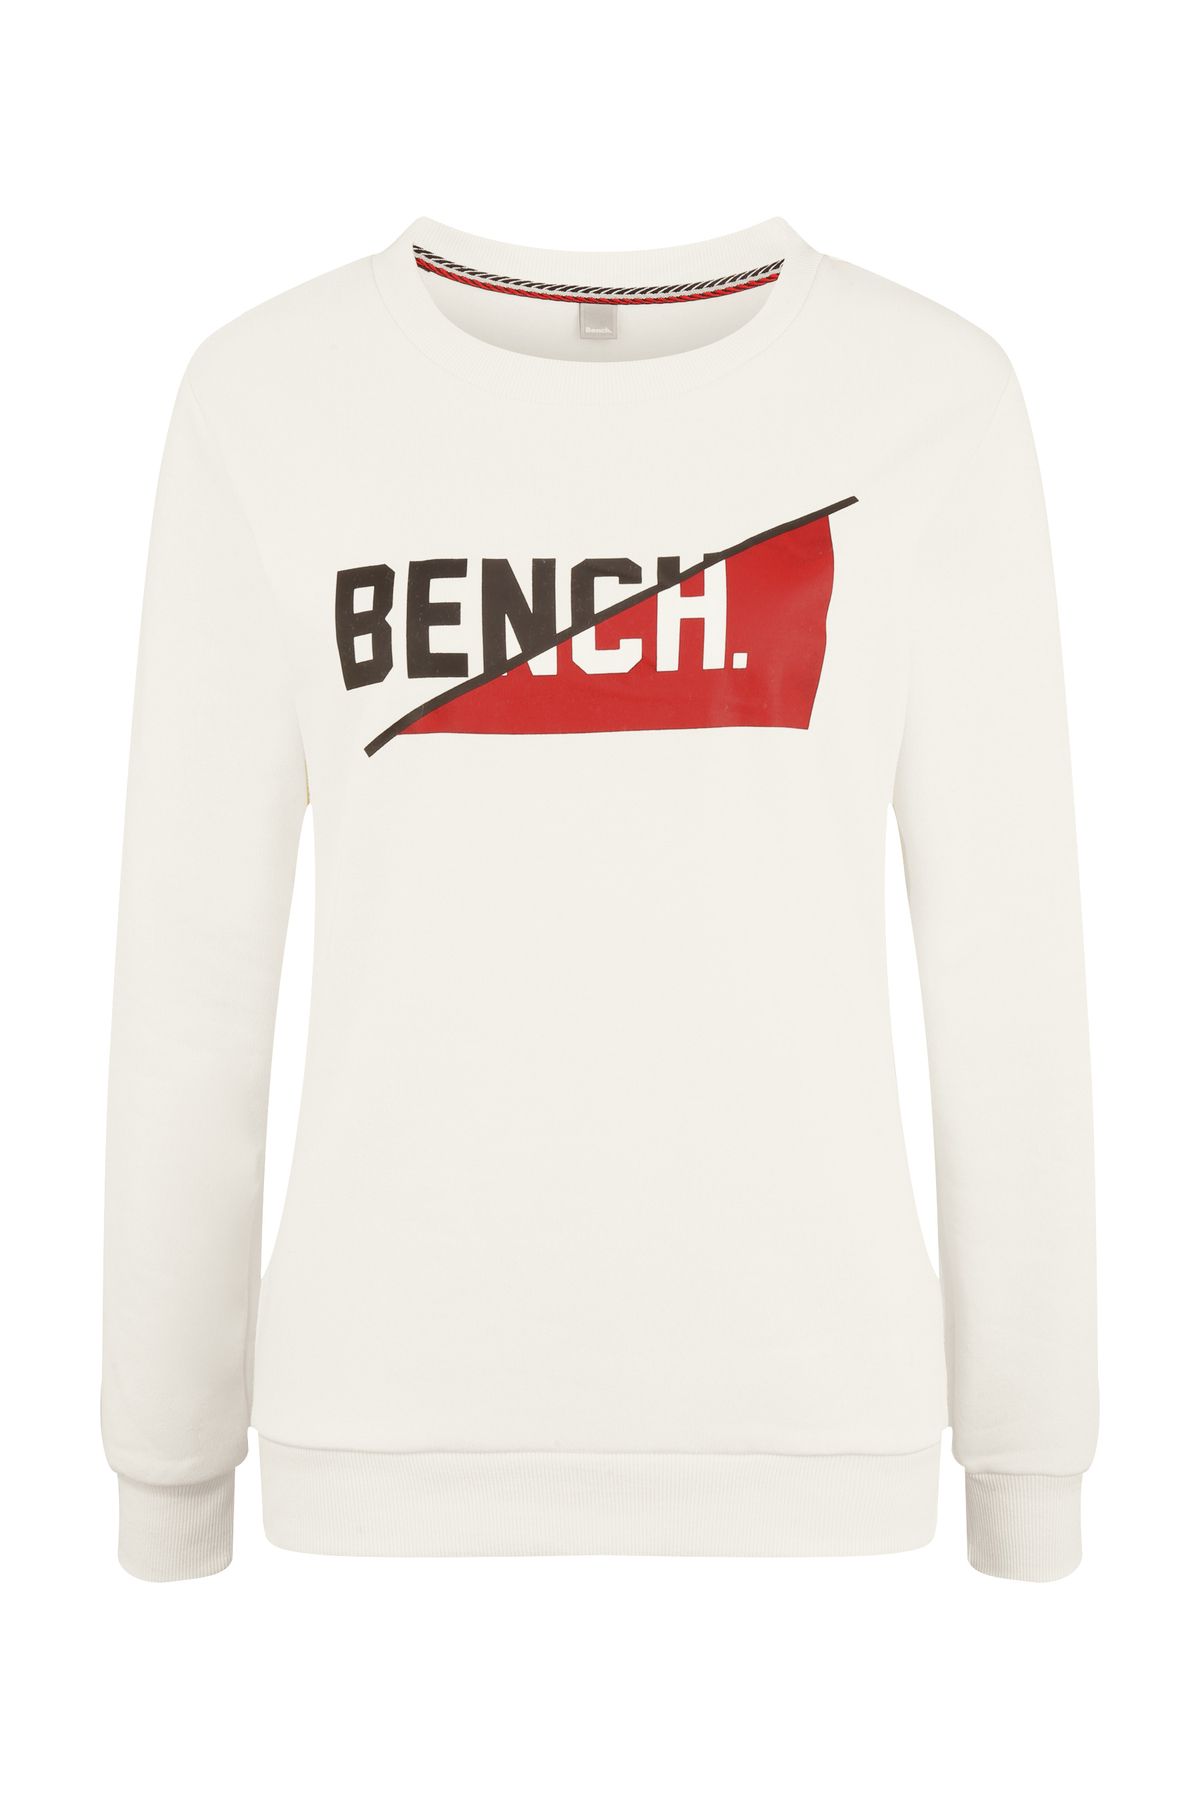 BENCH Sweatshirt - Beige - Regular Fit - Trendyol